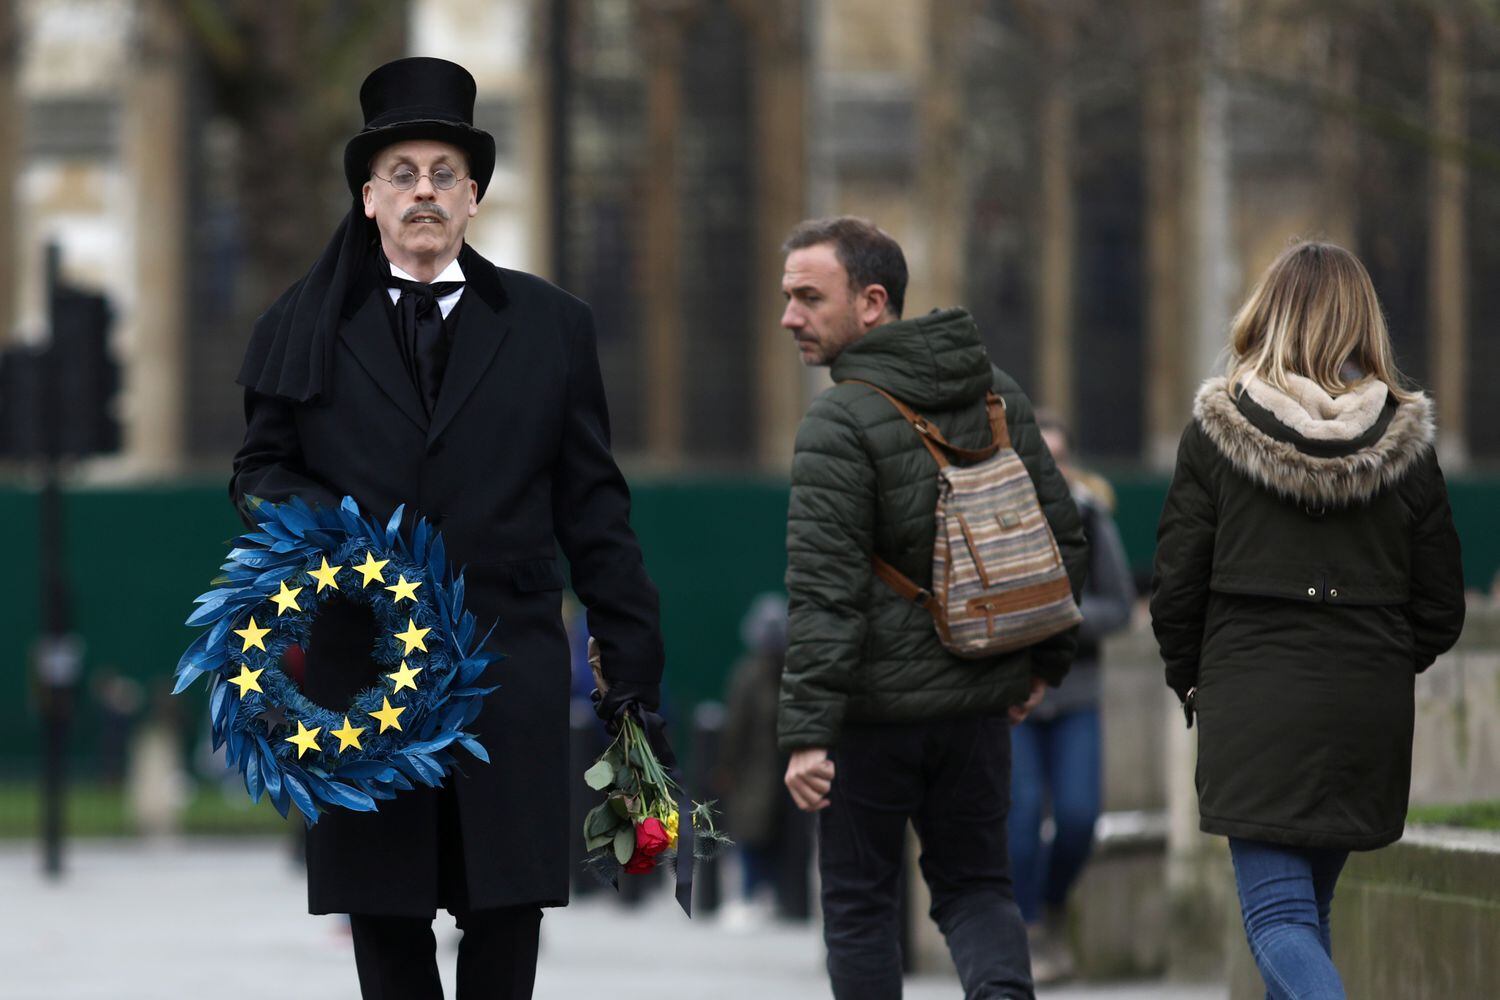 Homem carrega guirlanda em símbolo da União Europeia na praça do Parlamento, em Londres, nesta sexta-feira.